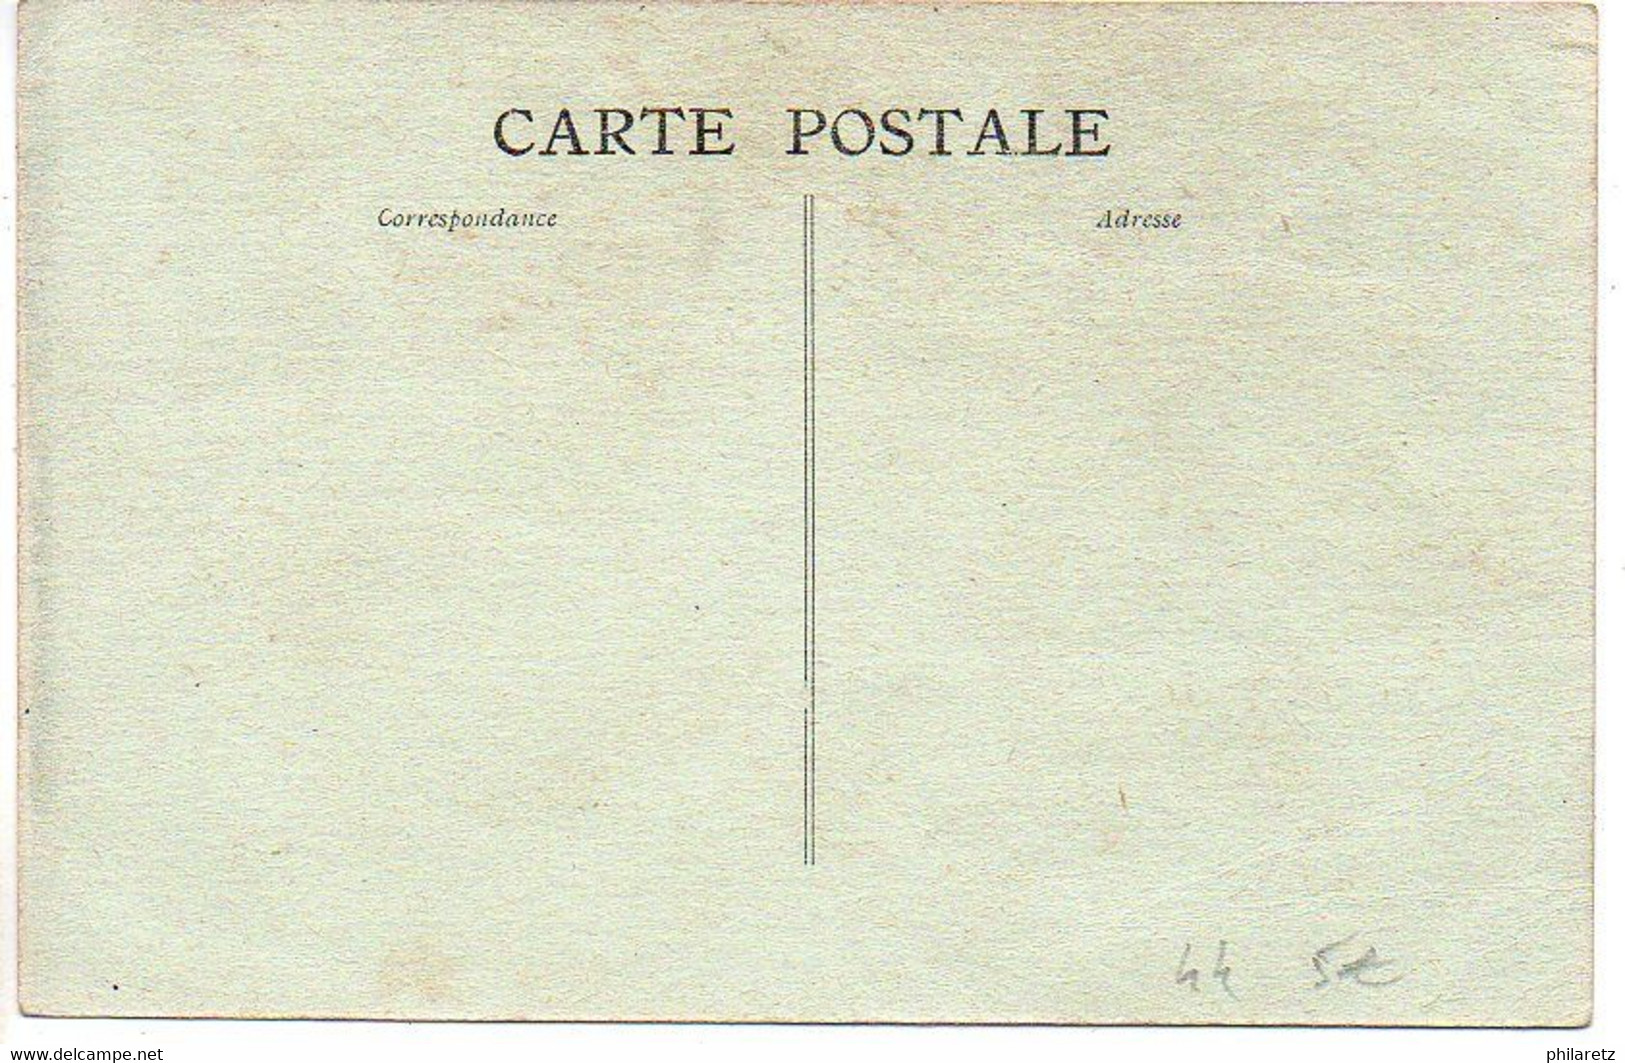 Legé : Cavalcade Historique - 11 Septembre 1911 - Char Des Pierrots Et Voiturettes Fleuries - Legé